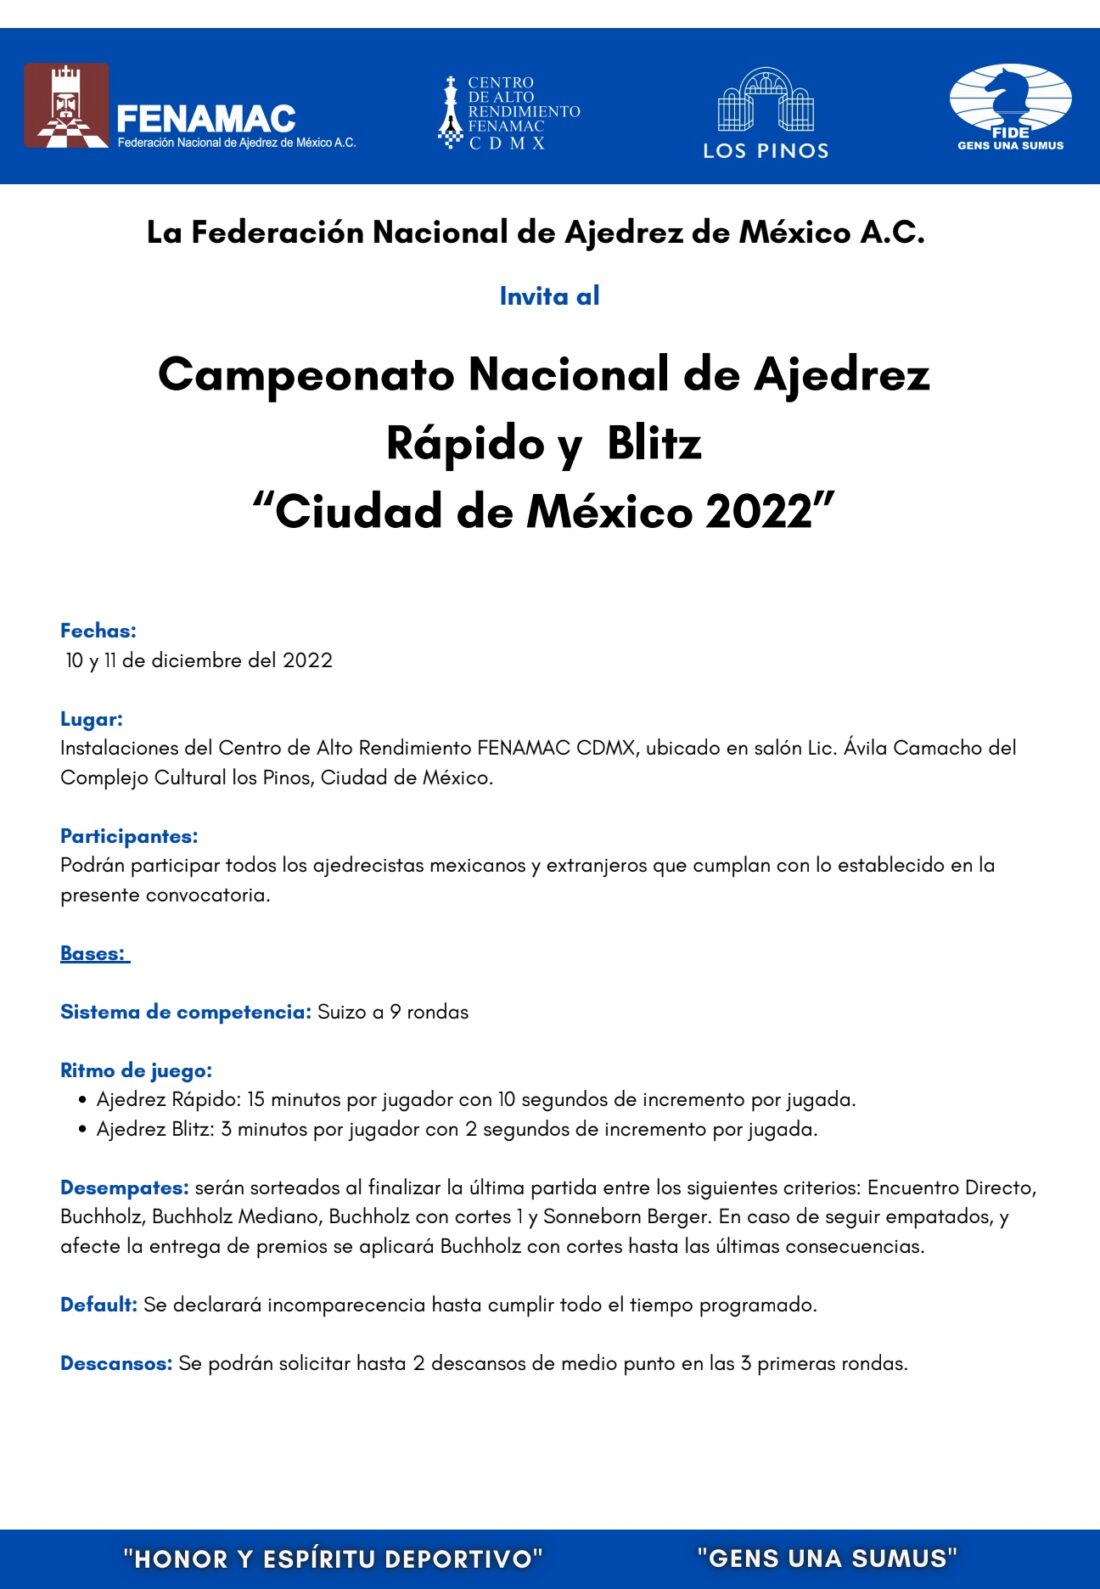 Convocatorio de  Campeonato Nacional de Ajedrez Rápido “Ciudad de México 2022”